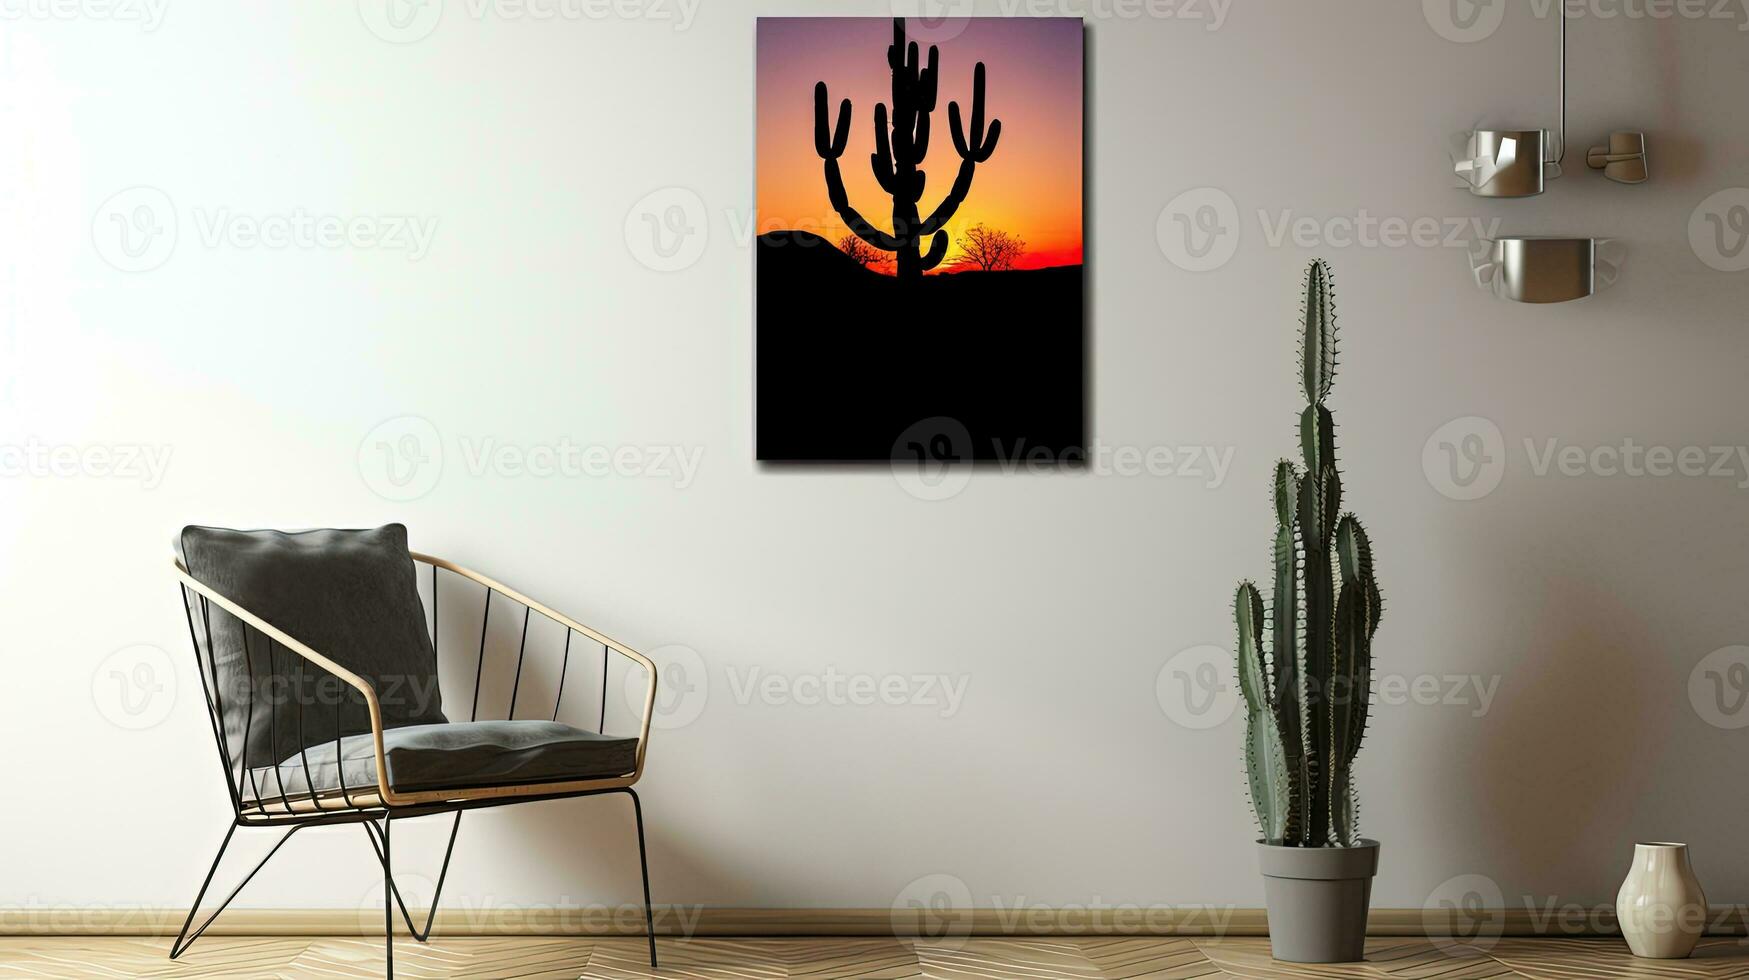 Arizona Desierto en unido estados tiene un vibrante amanecer con cactus árbol siluetas foto